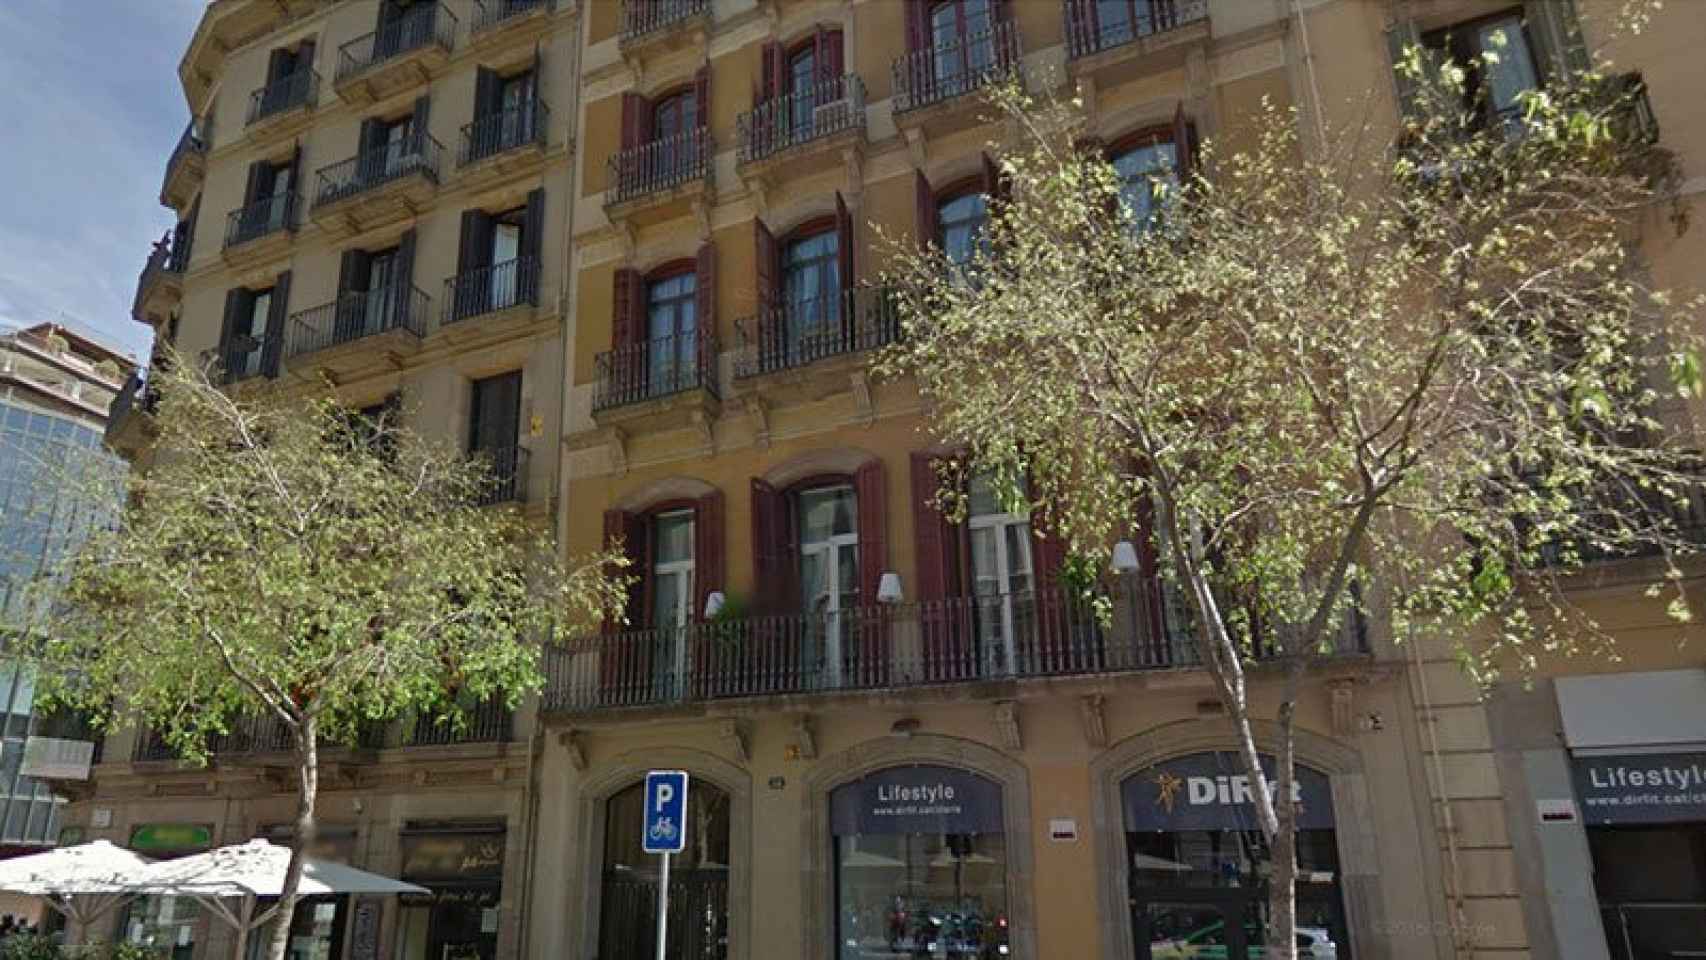 Inmuebles en el centro de Barcelona en los que es más frecuente encontrar contratos de alquiler de renta antigua / CG